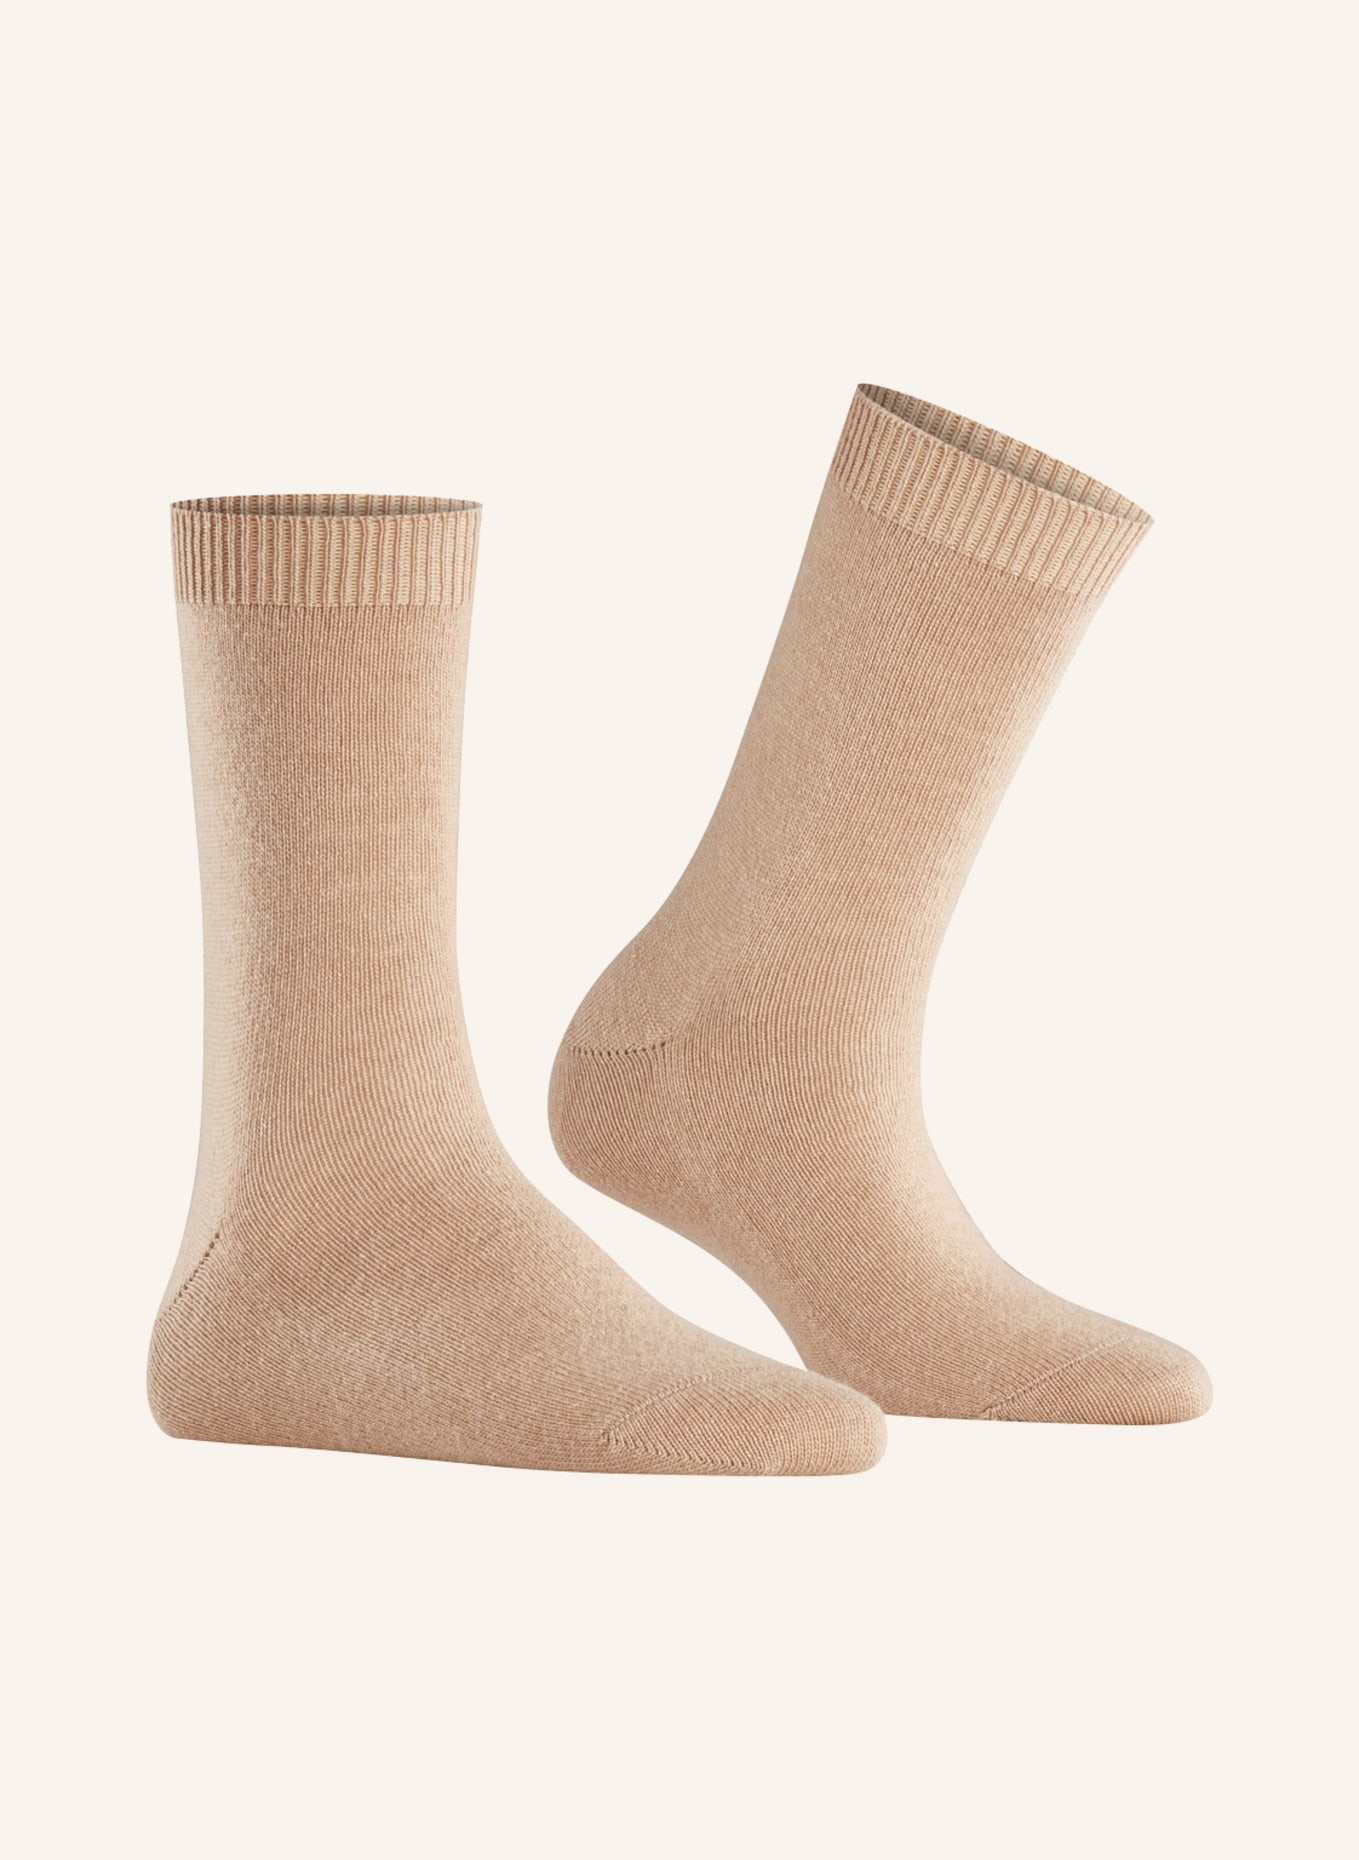 FALKE Socken COSY WOOL mit Merinowolle , Farbe: 4220 CAMEL (Bild 3)